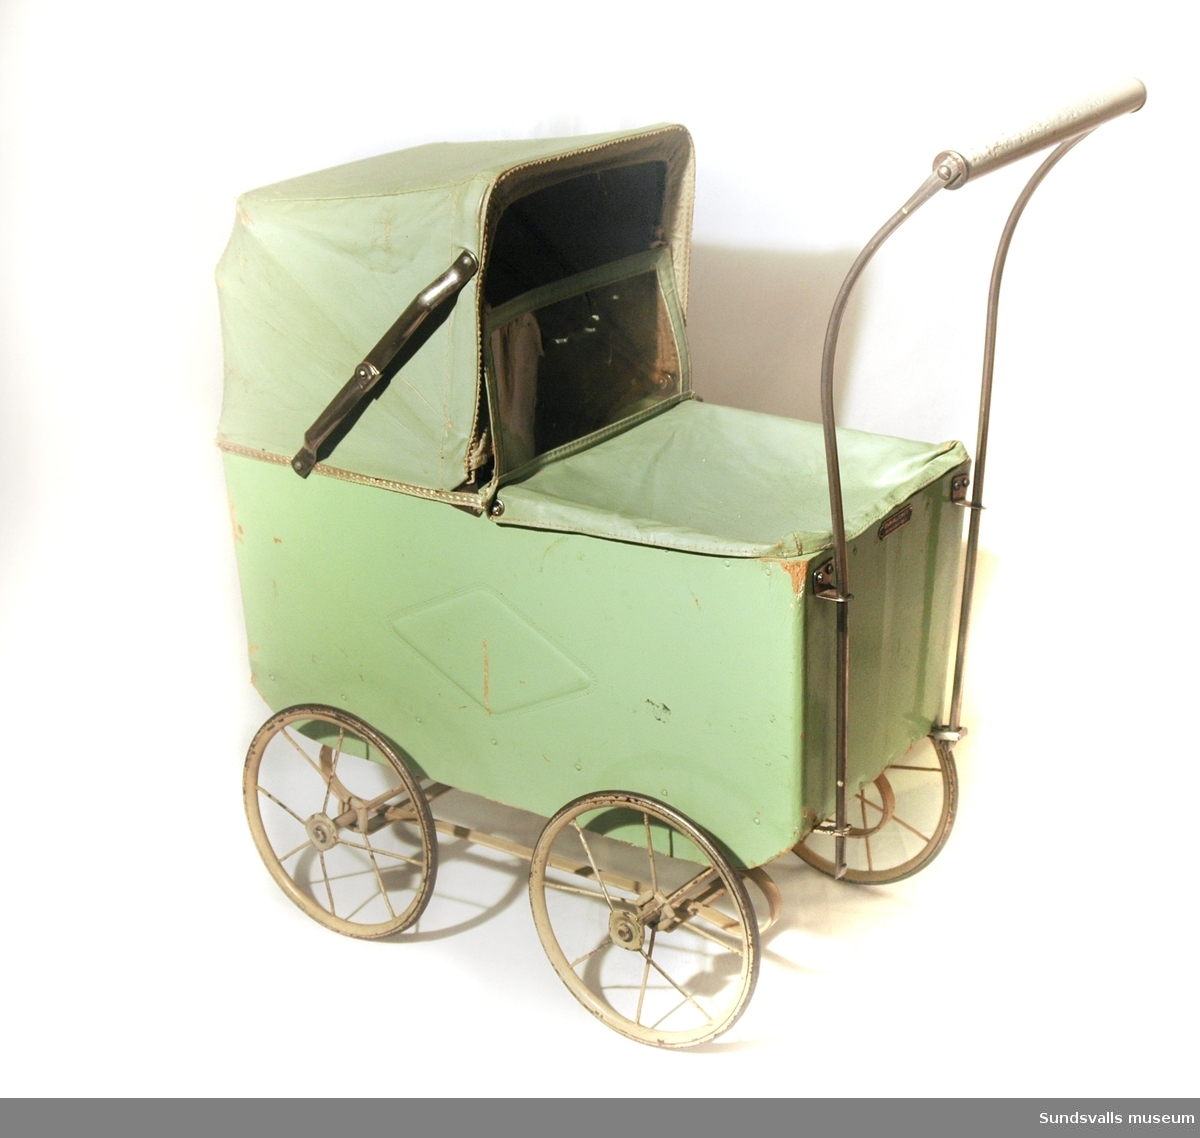 Dockvagn i ljusgrönt, med vagn av trä och suflett av vaxduk. På vagnens sida finns ett mönster i form av en fyrkant. I vagnen ligger även en virkad filt.